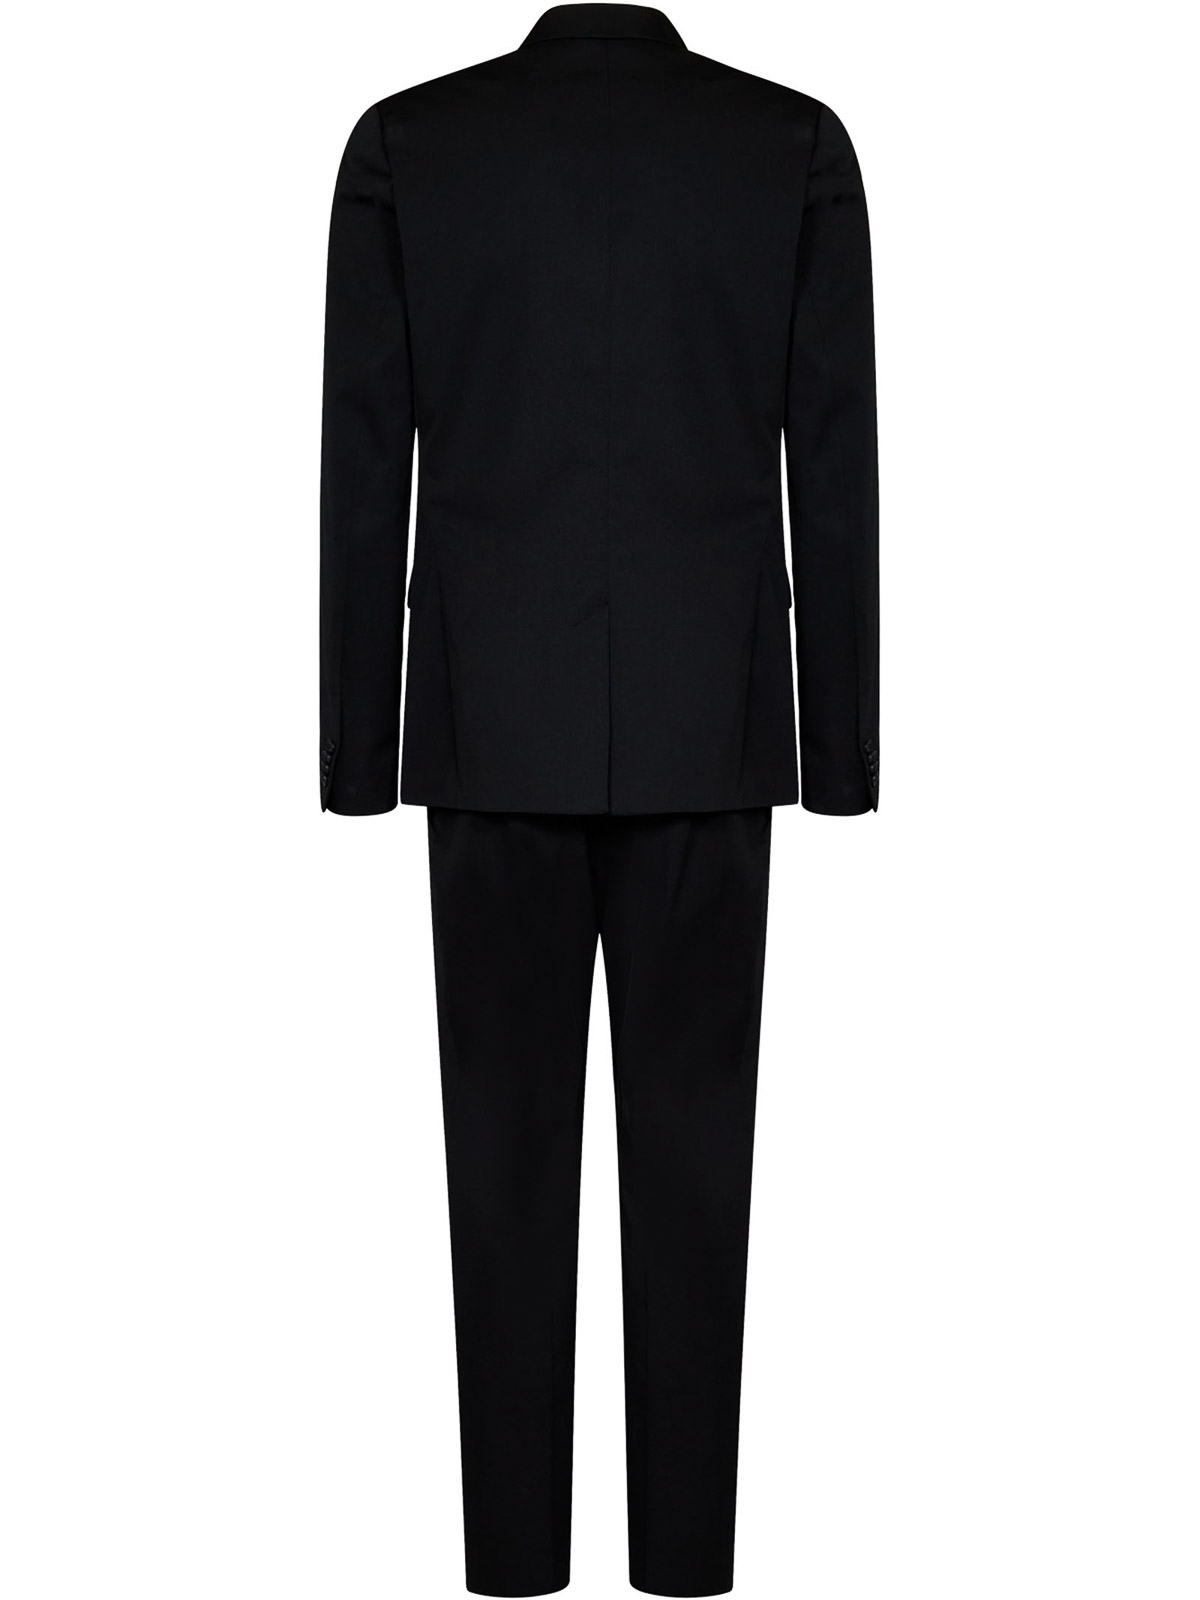 Peter England Suit - Buy Best Peter England Suits Online | Myntra